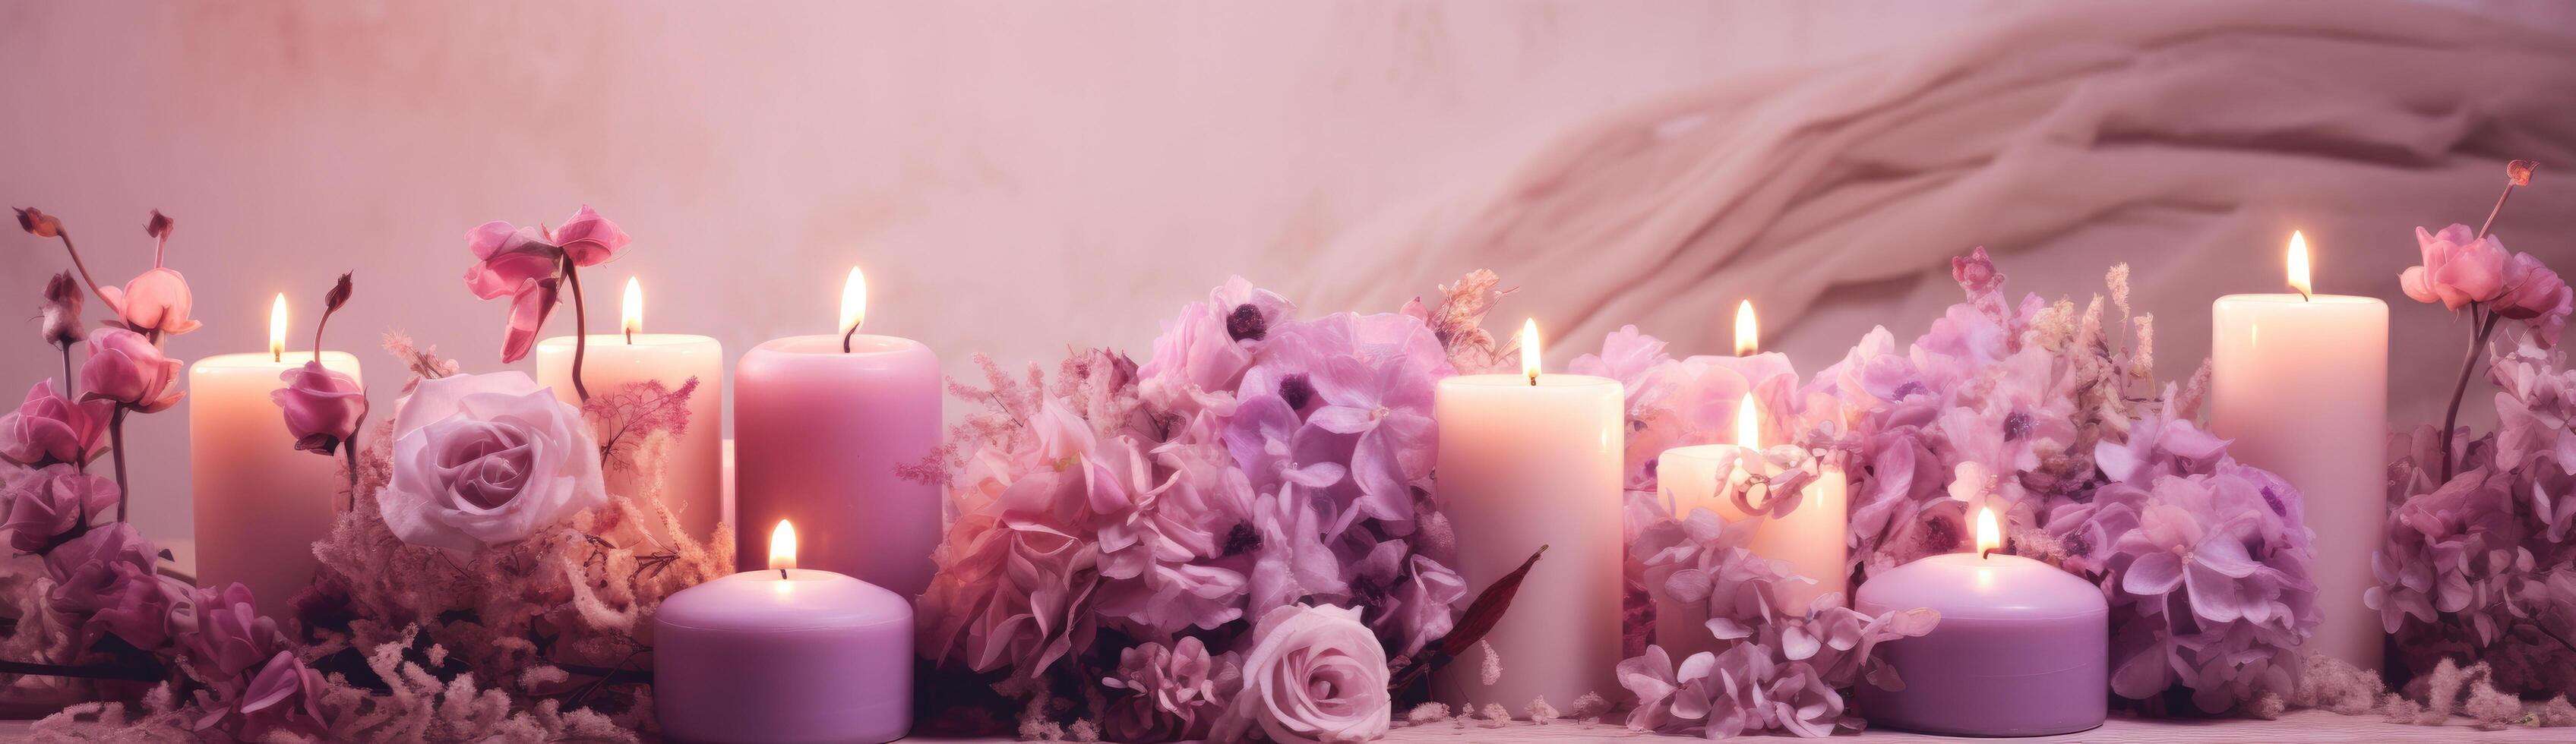 ai gerado a imagem do velas e flores com roxa flores foto